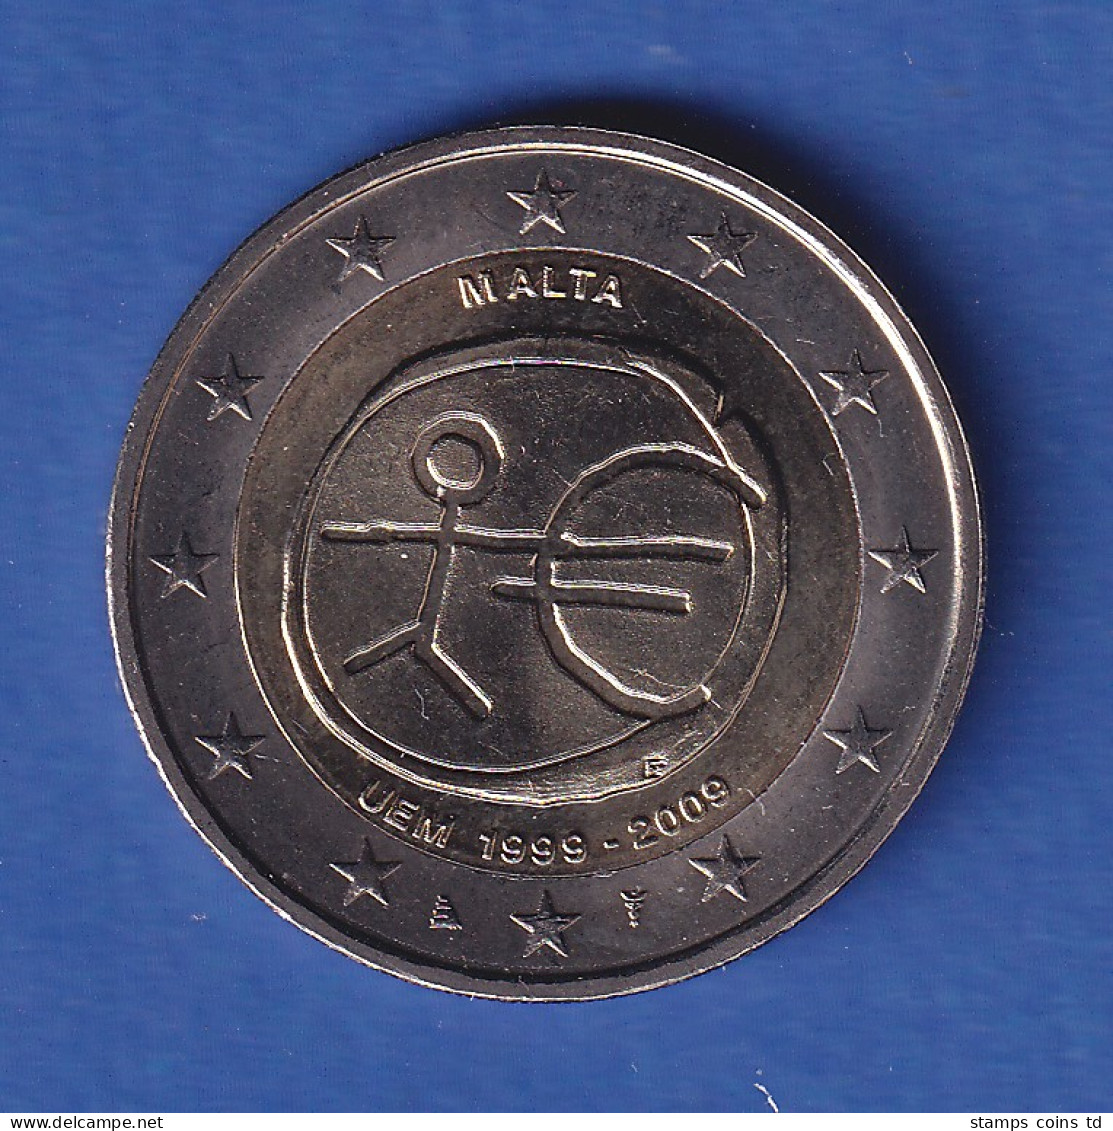 Malta 2009 2-Euro-Sondermünze Währungsunion Bankfr. Unzirk.  - Malta